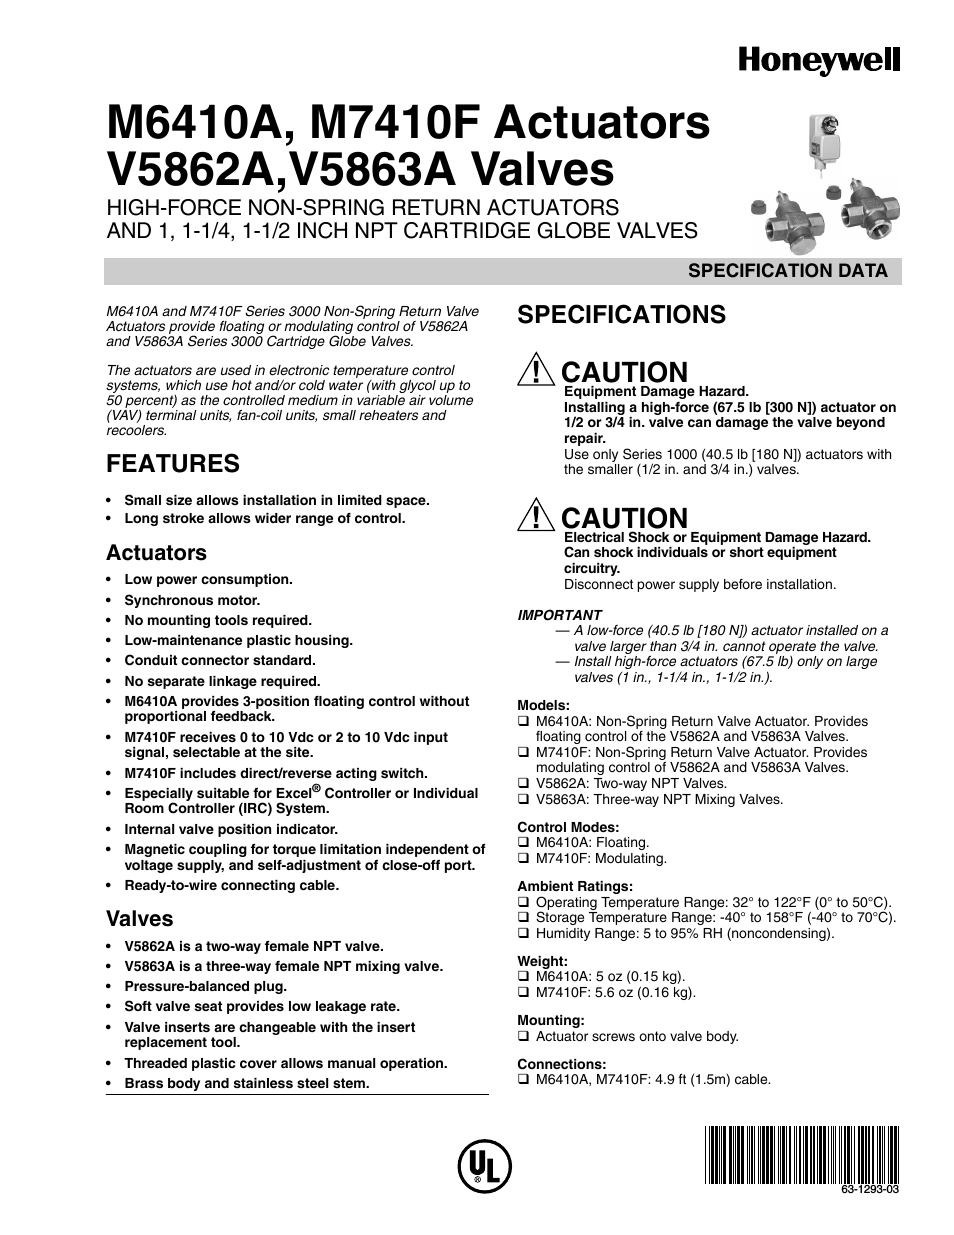 V5862A